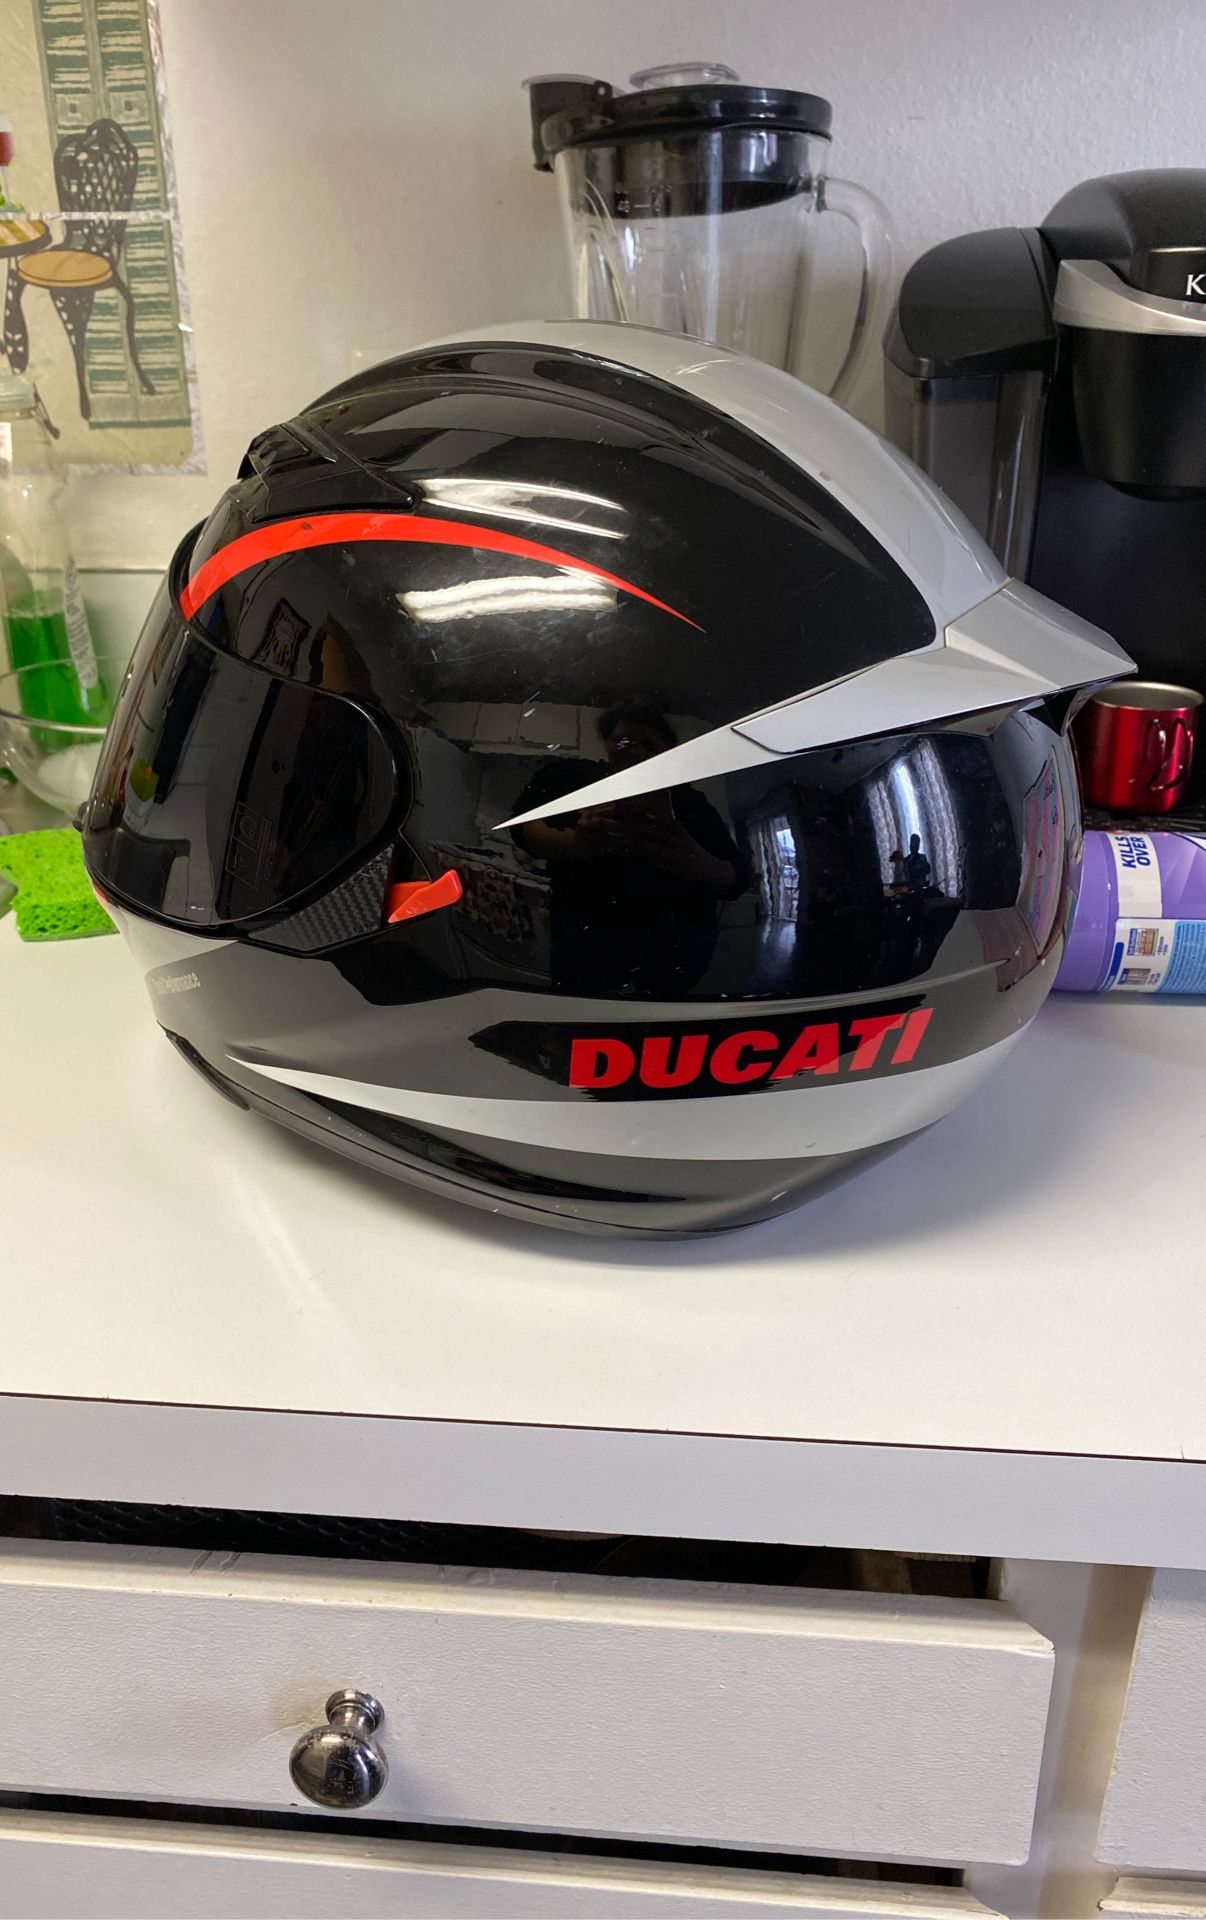 Ducati motorcycle helmet